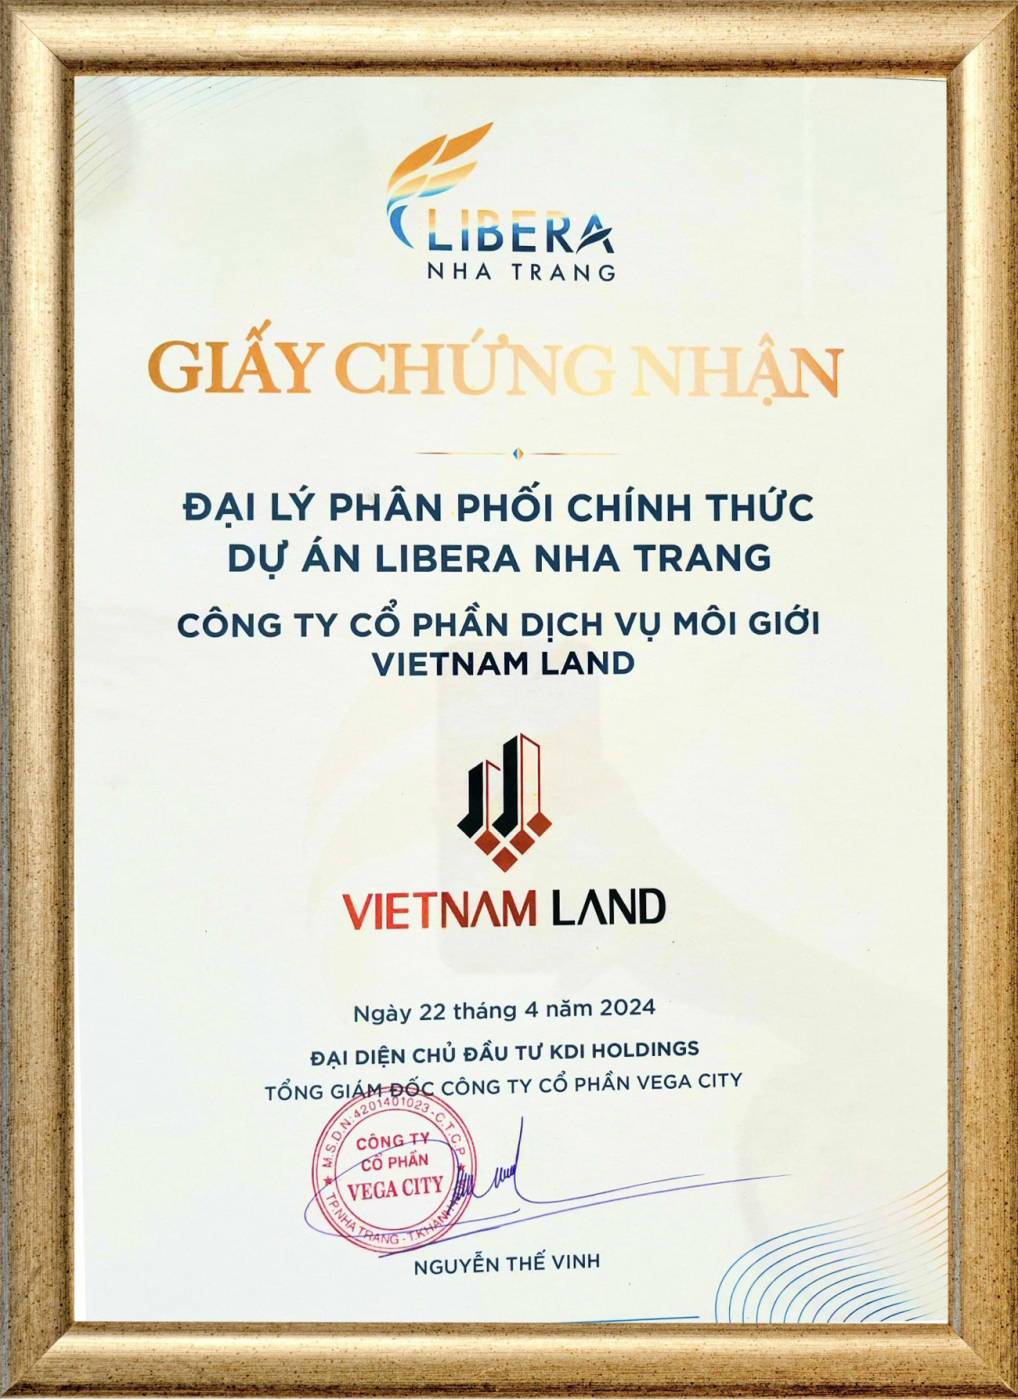 vietnam land đơn vị phân phối chính thức f1 dự án libera nha trang